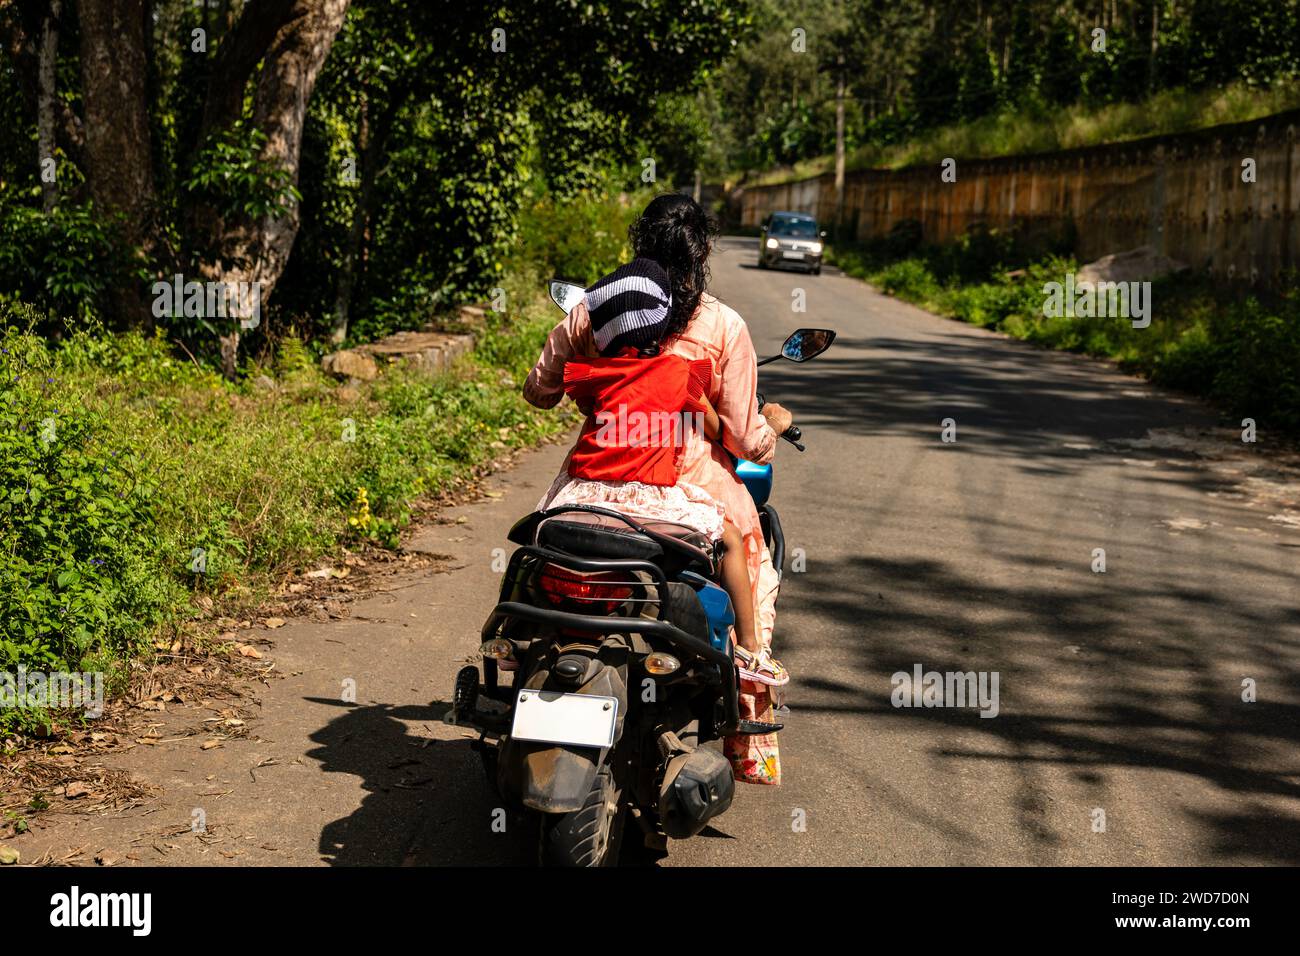 Una decisione di un secondo si svolge mentre una madre protegge istintivamente sua figlia su uno scooter Foto Stock